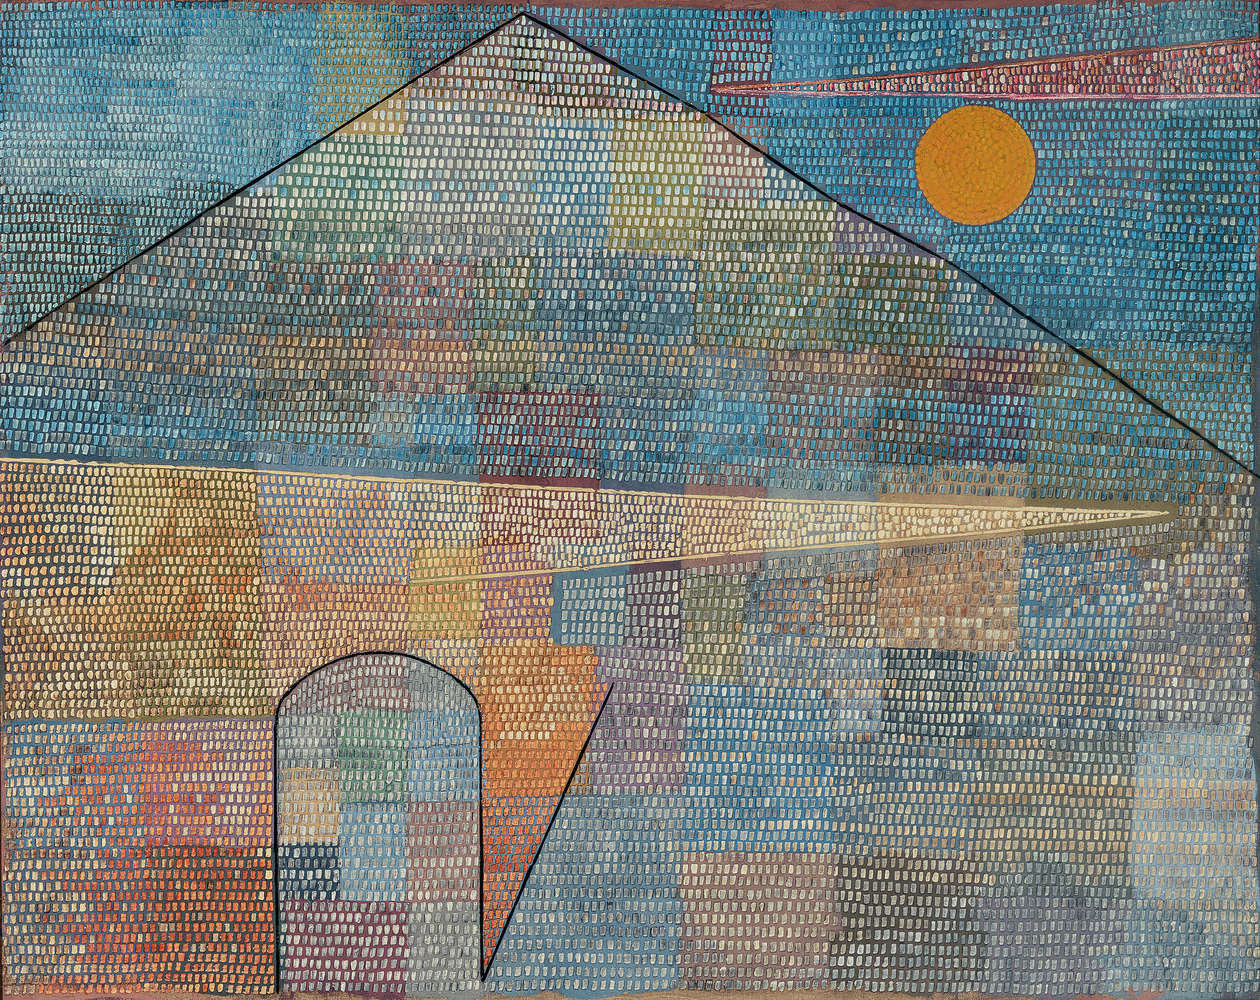             Ad Parnassum" muurschildering van Paul Klee
        